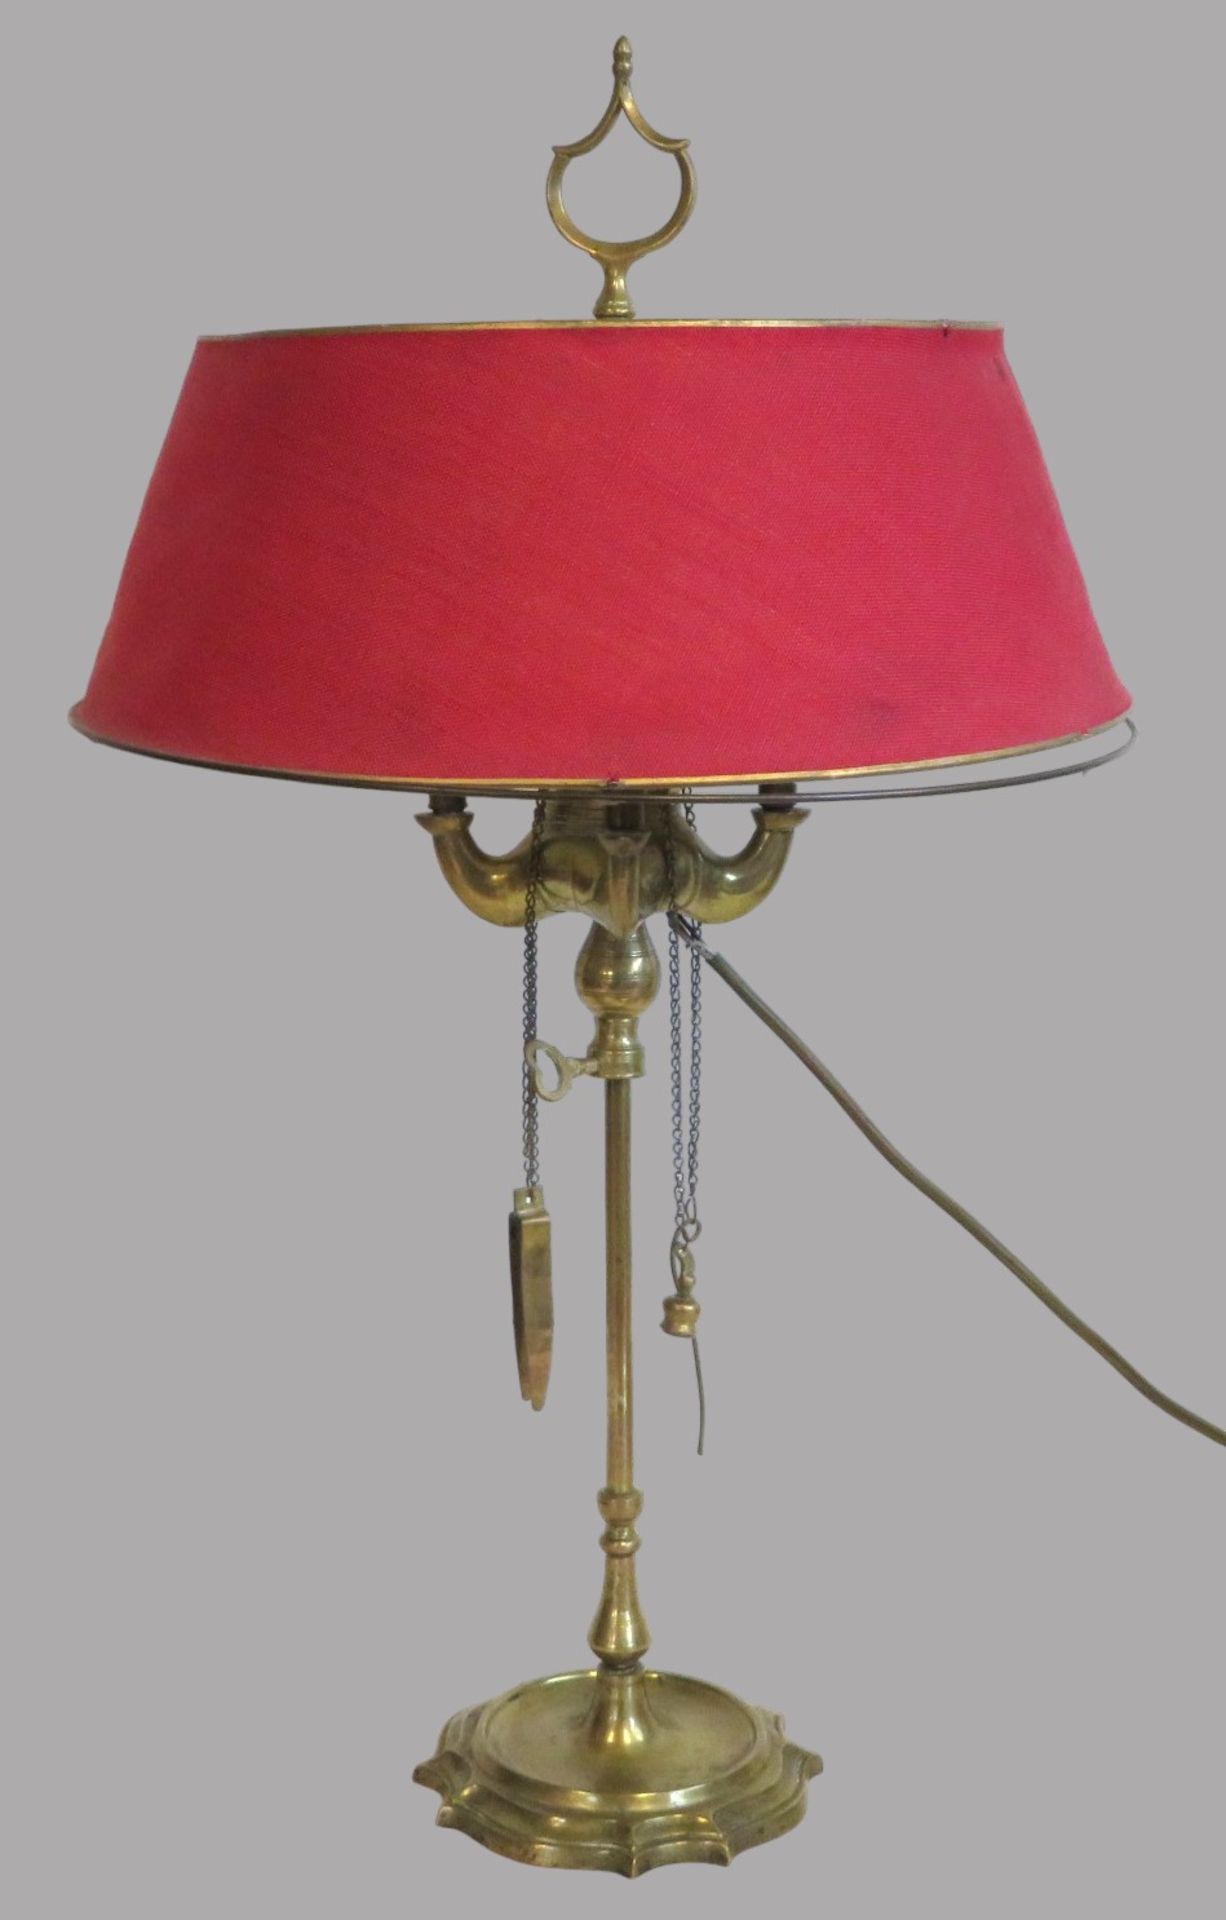 Tischlampe, 1. Hälfte 19. Jahrhundert, gefertigt aus einer antiken, venezianischen Öllampe, Messing